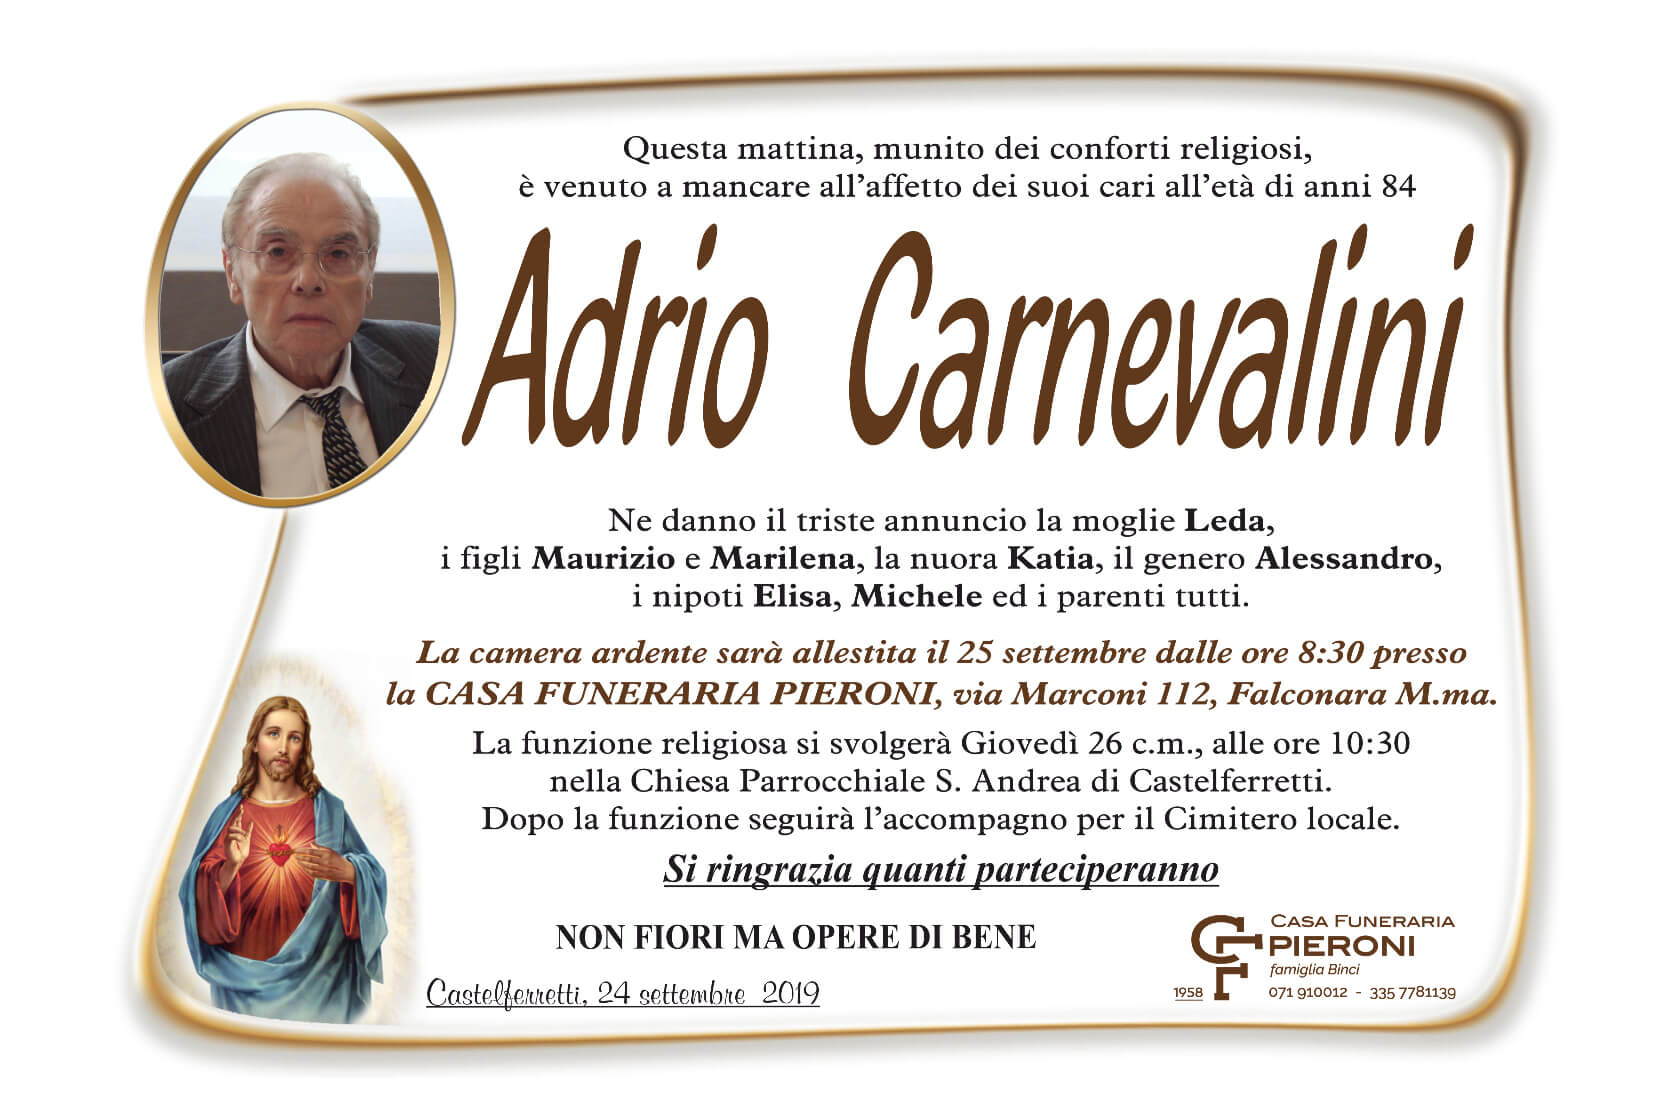 Adrio Carnevalini